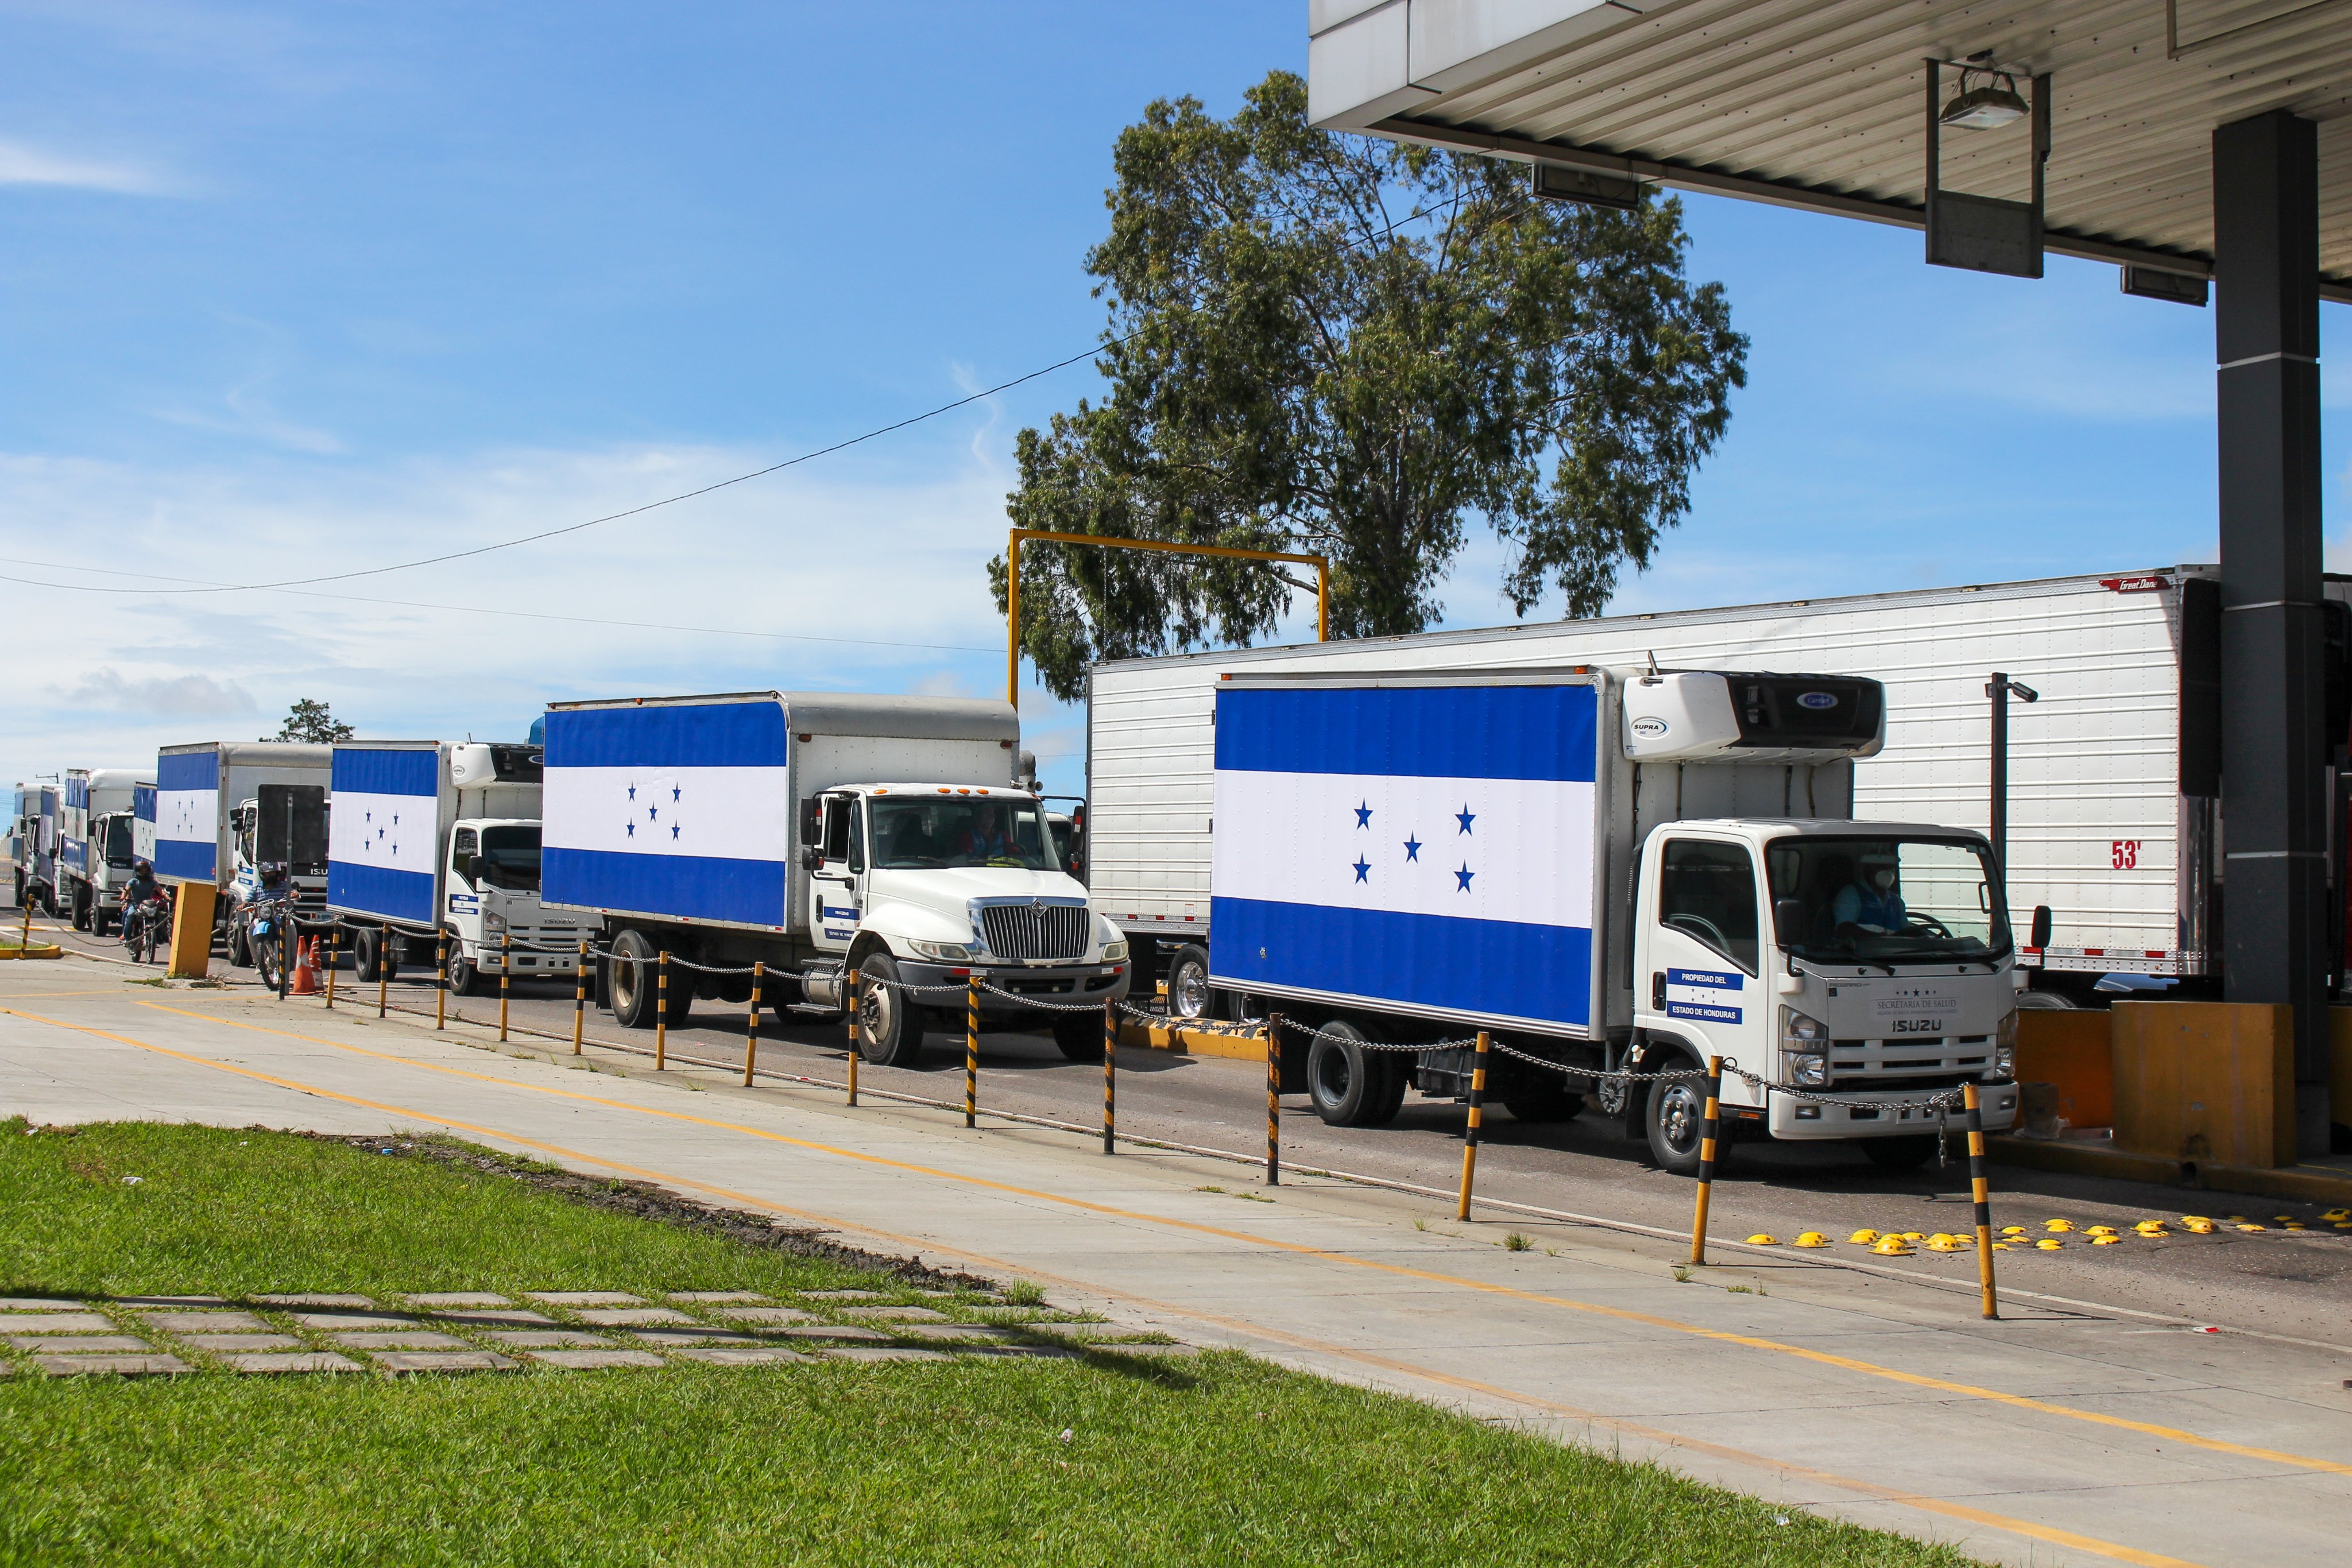 Camiones de red de frío que trasladarán las vacunas Moderna donadas por el gobierno de Estados Unidos a Honduras. (Foto Prensa Libre: Unicef Honduras)